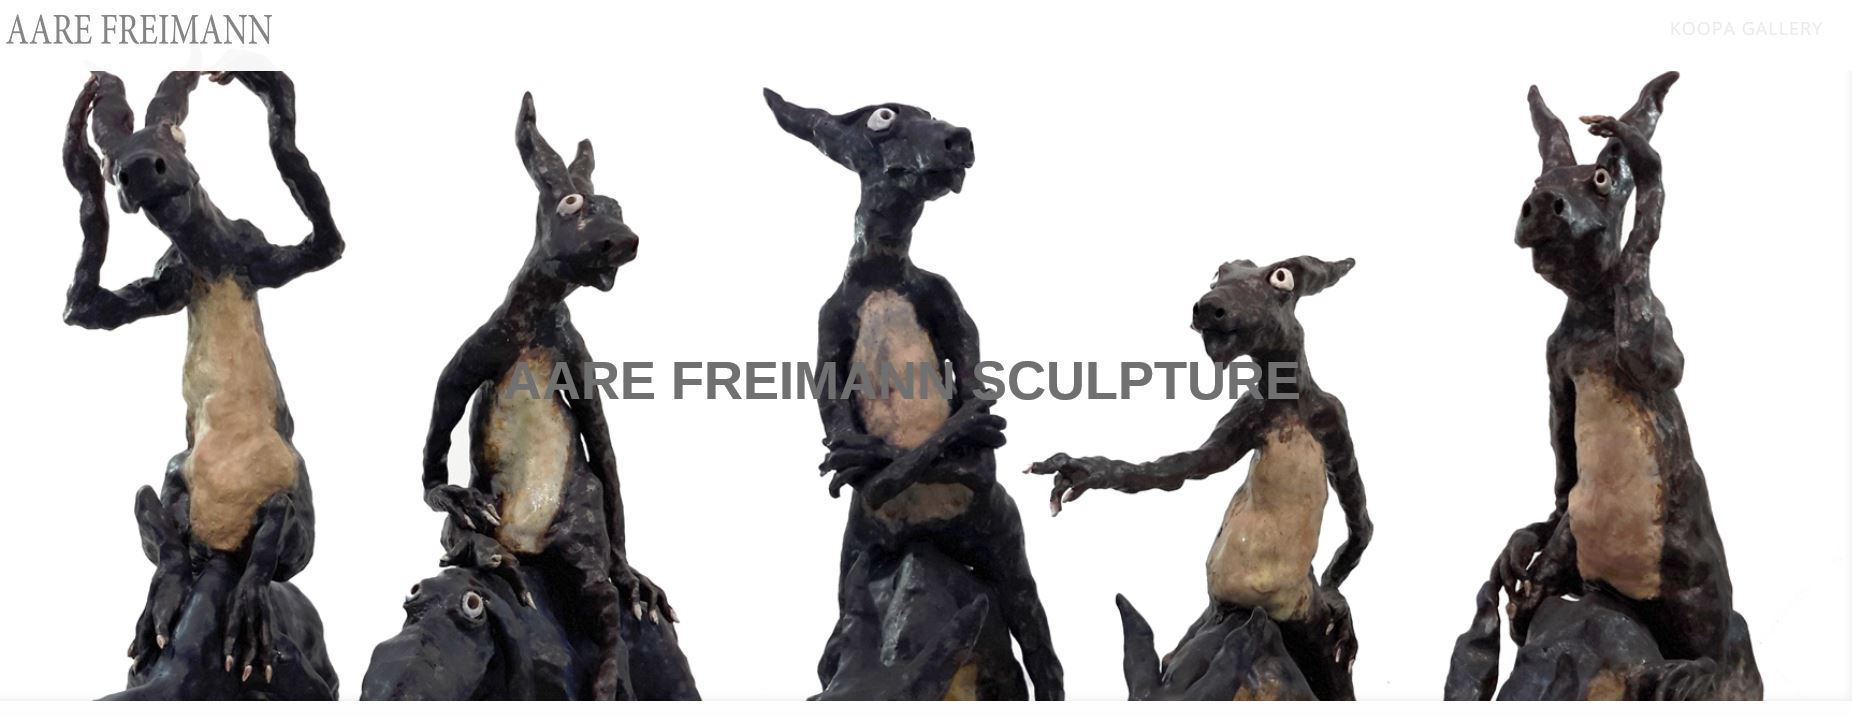 Aare Freiman Ceramic Sculptures